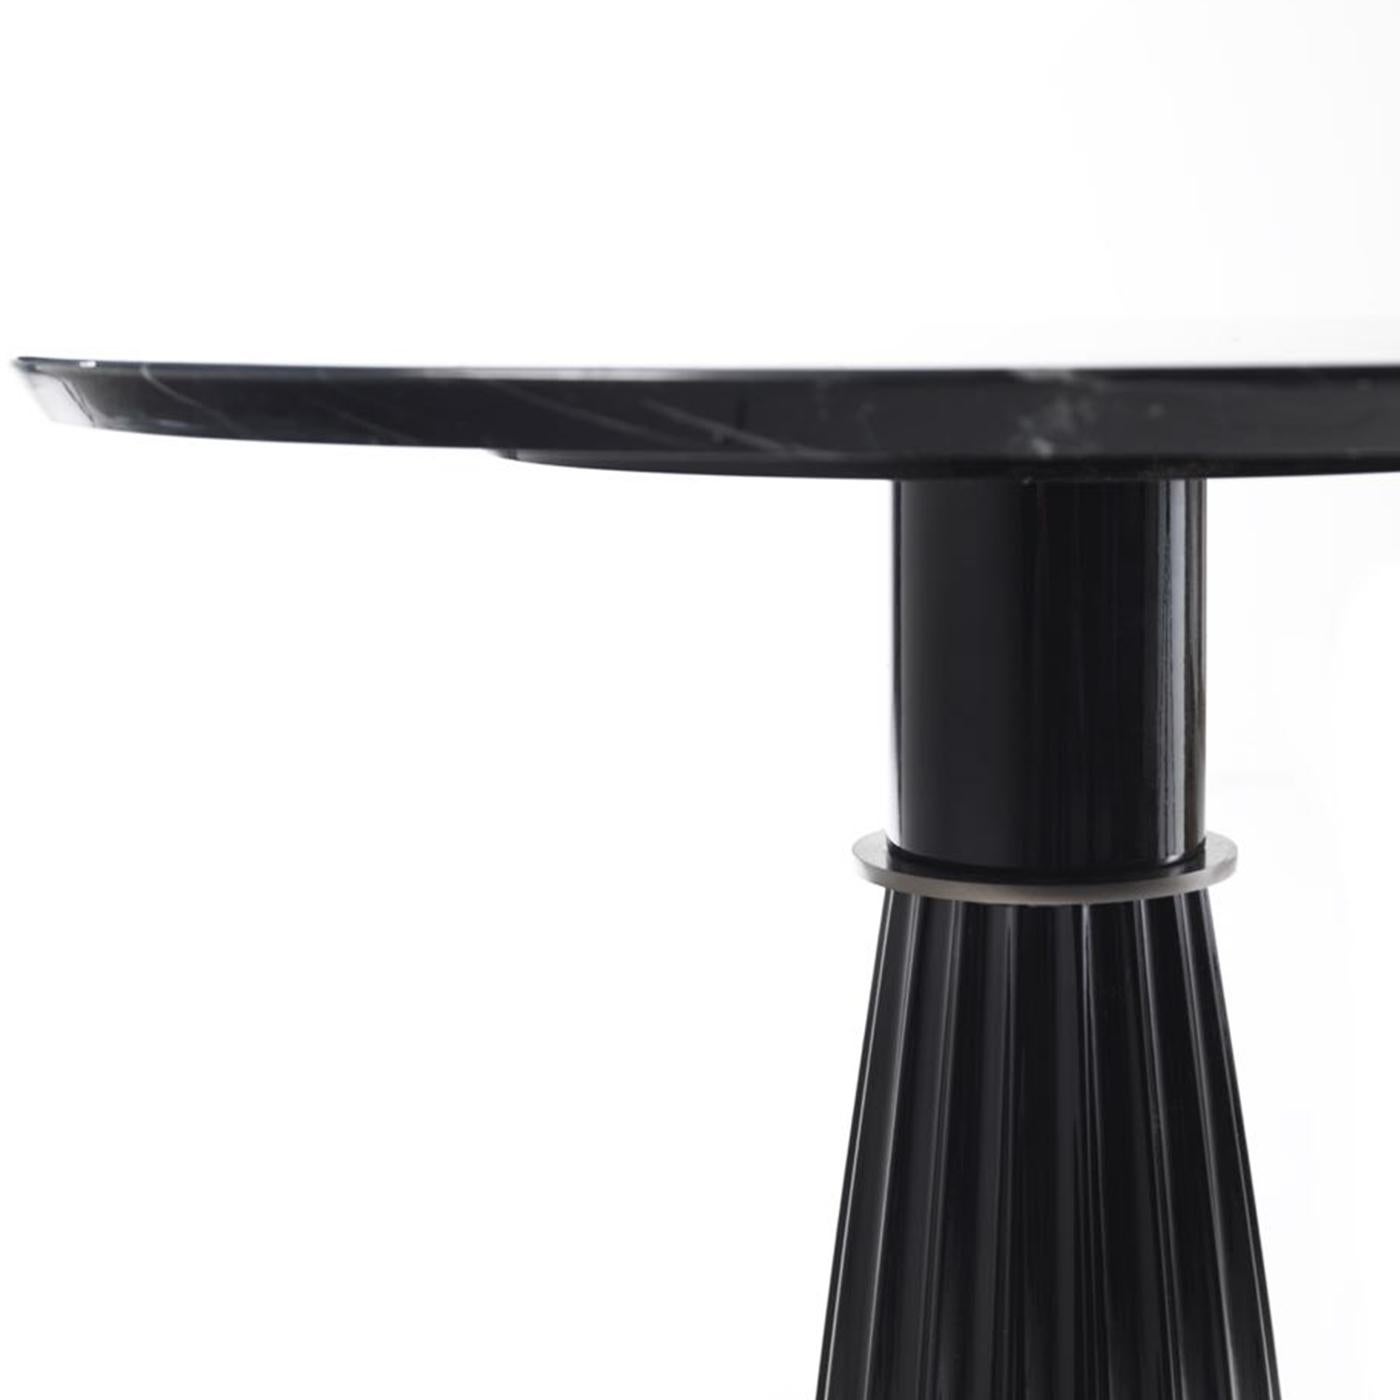 Faisant partie de la collection Orlando, cette table d'appoint haute peut être présentée seule dans un salon, une entrée ou un bureau, ou elle peut être associée à son homologue basse pour un effet dynamique. L'allure classique de cette pièce est